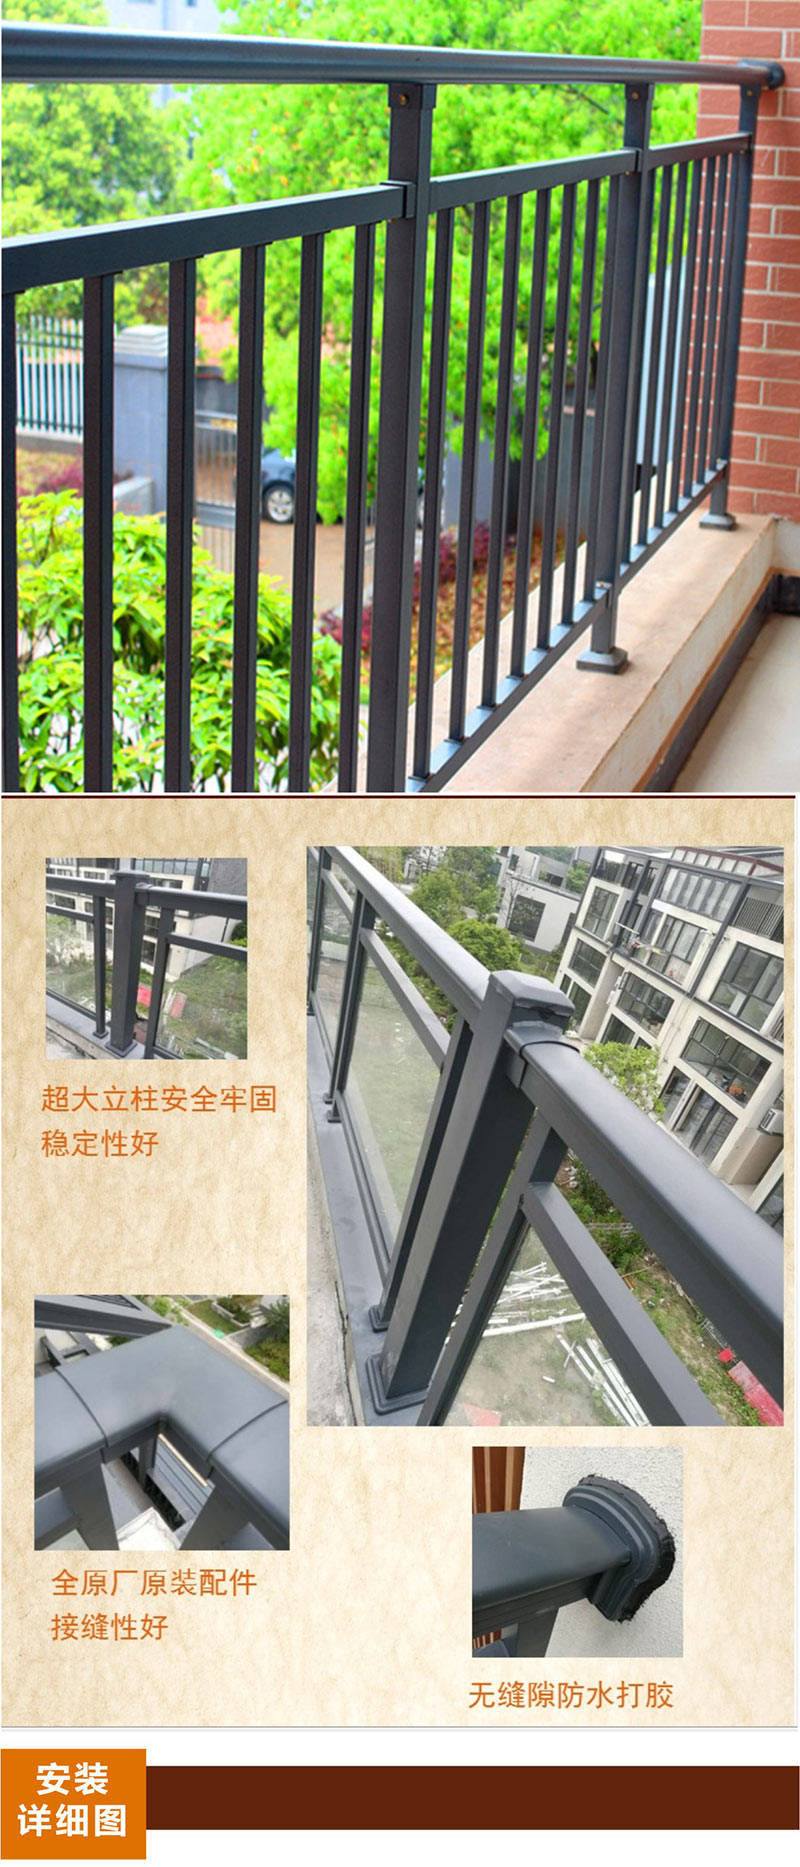 桂林建筑铝合金门窗工程